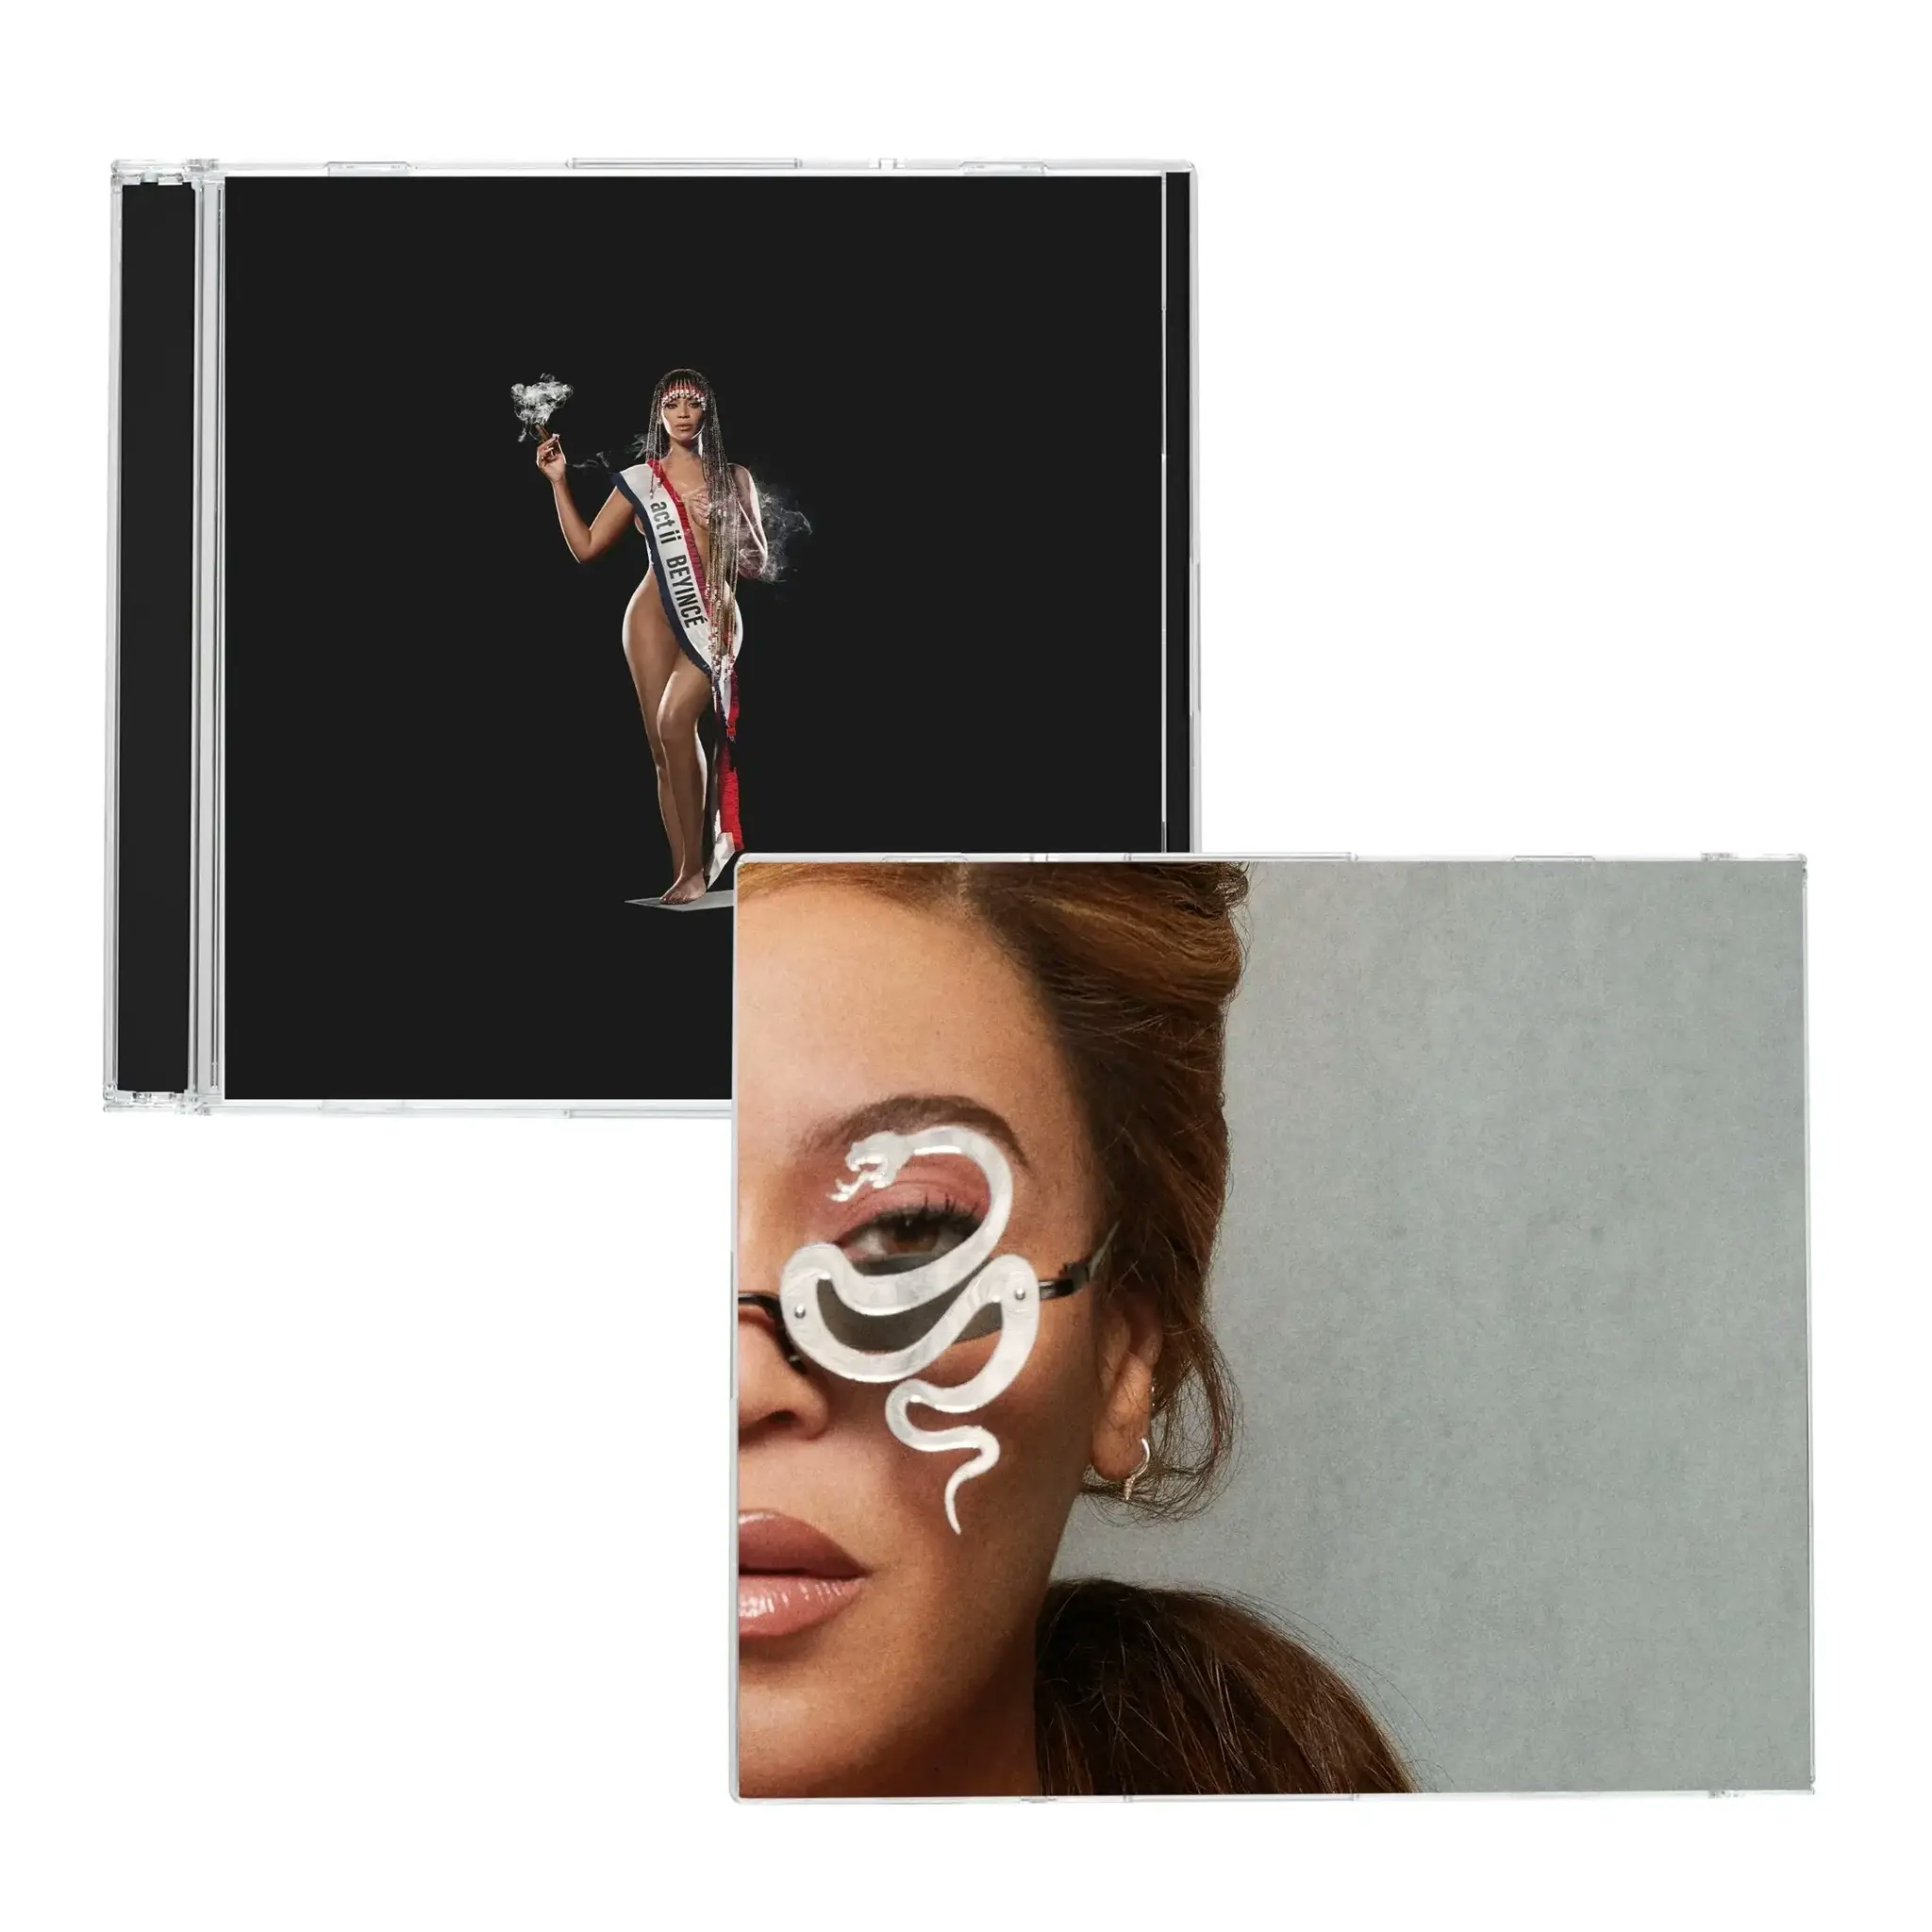 Album artwork for Album artwork for Cowboy Carter by Beyonce by Cowboy Carter - Beyonce